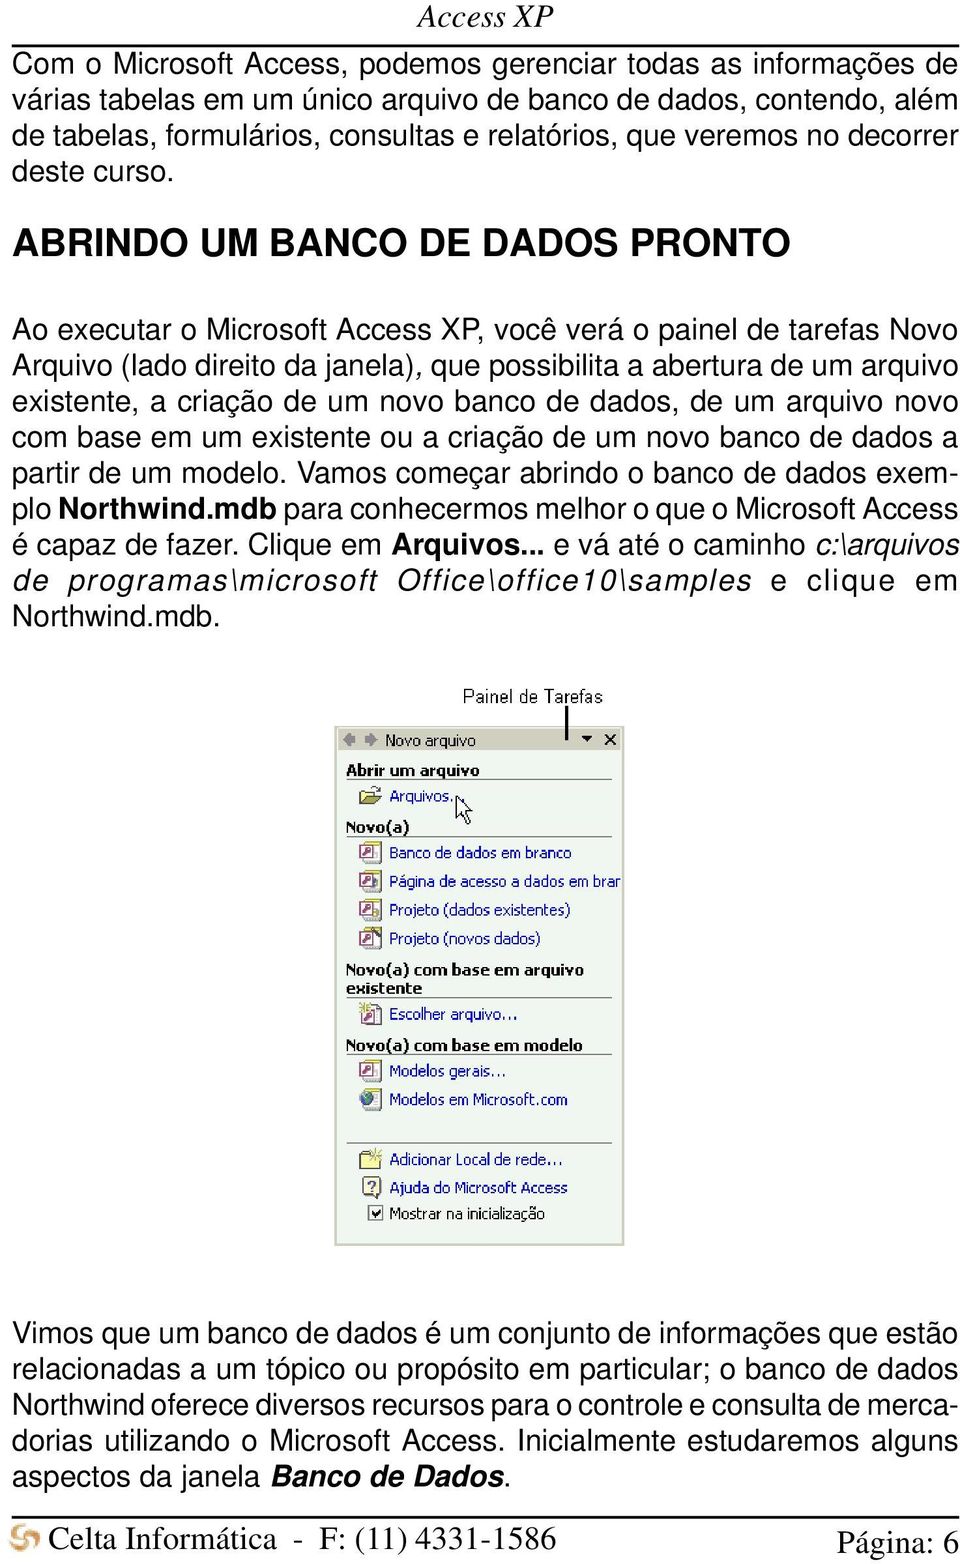 ABRINDO UM BANCO DE DADOS PRONTO Ao executar o Microsoft Access XP, você verá o painel de tarefas Novo Arquivo (lado direito da janela), que possibilita a abertura de um arquivo existente, a criação